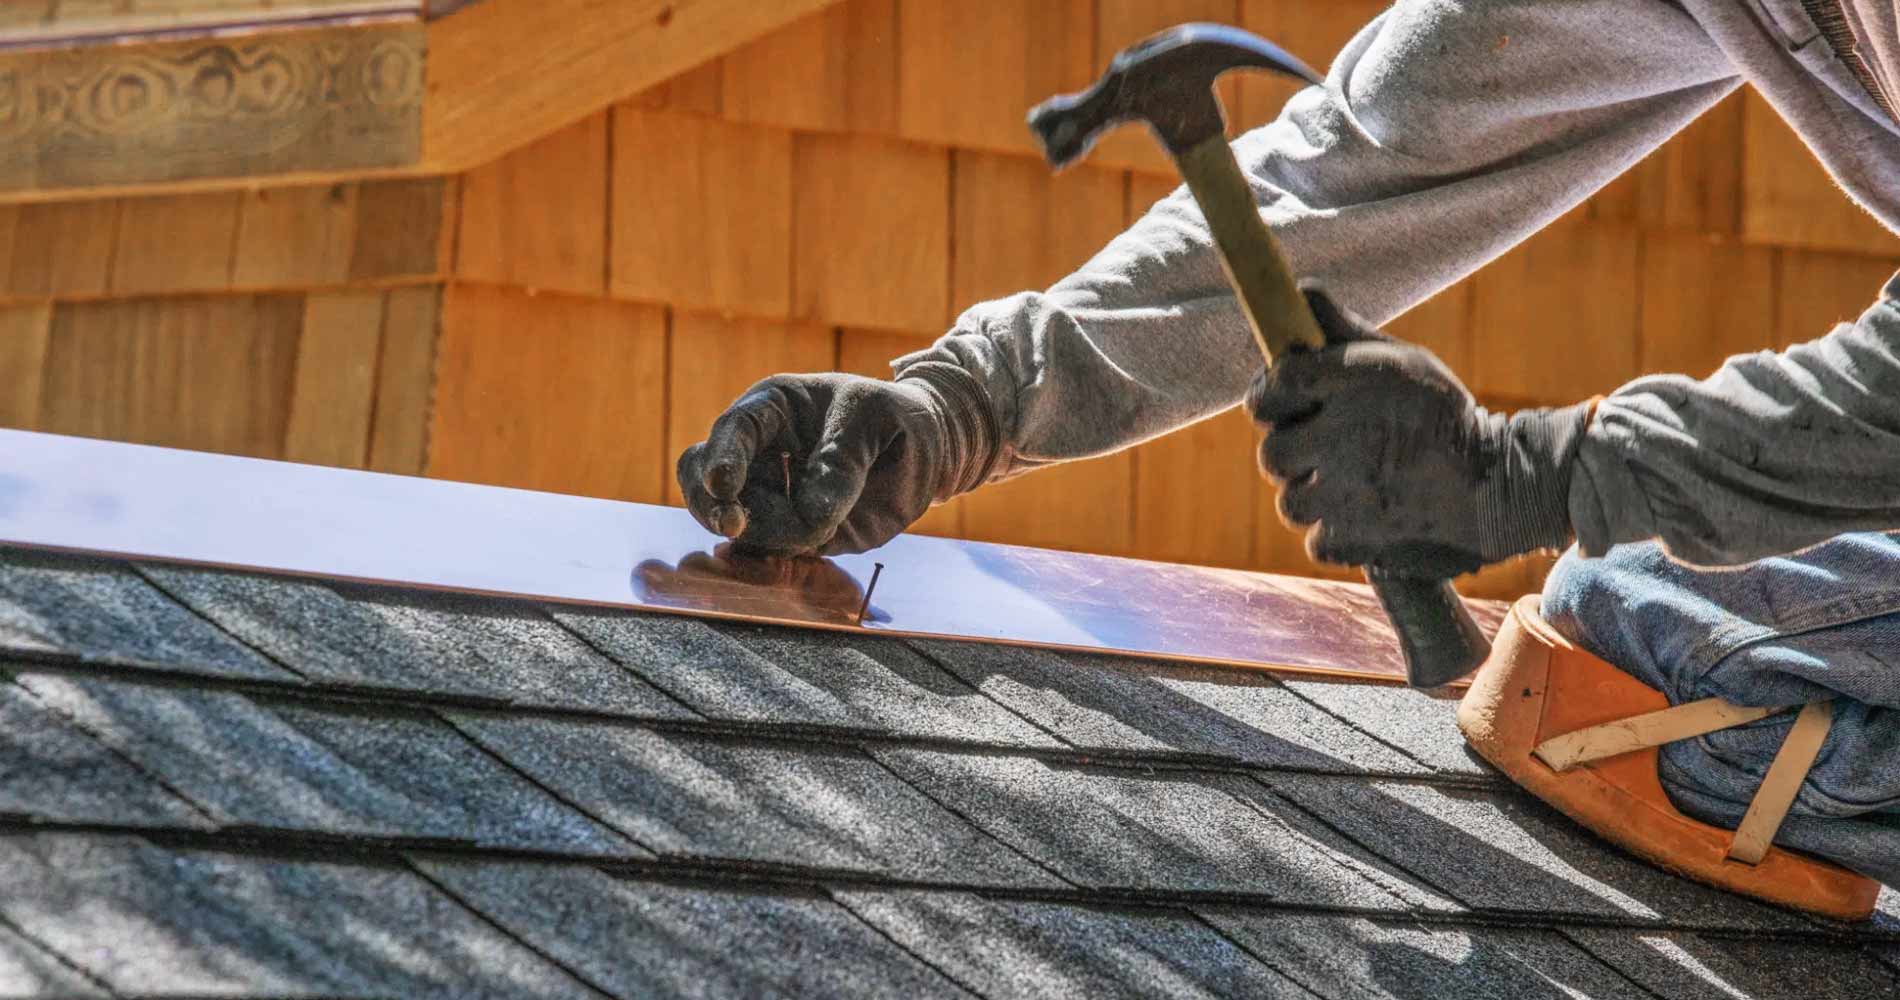 Roof Repair Contractors in North Jersey